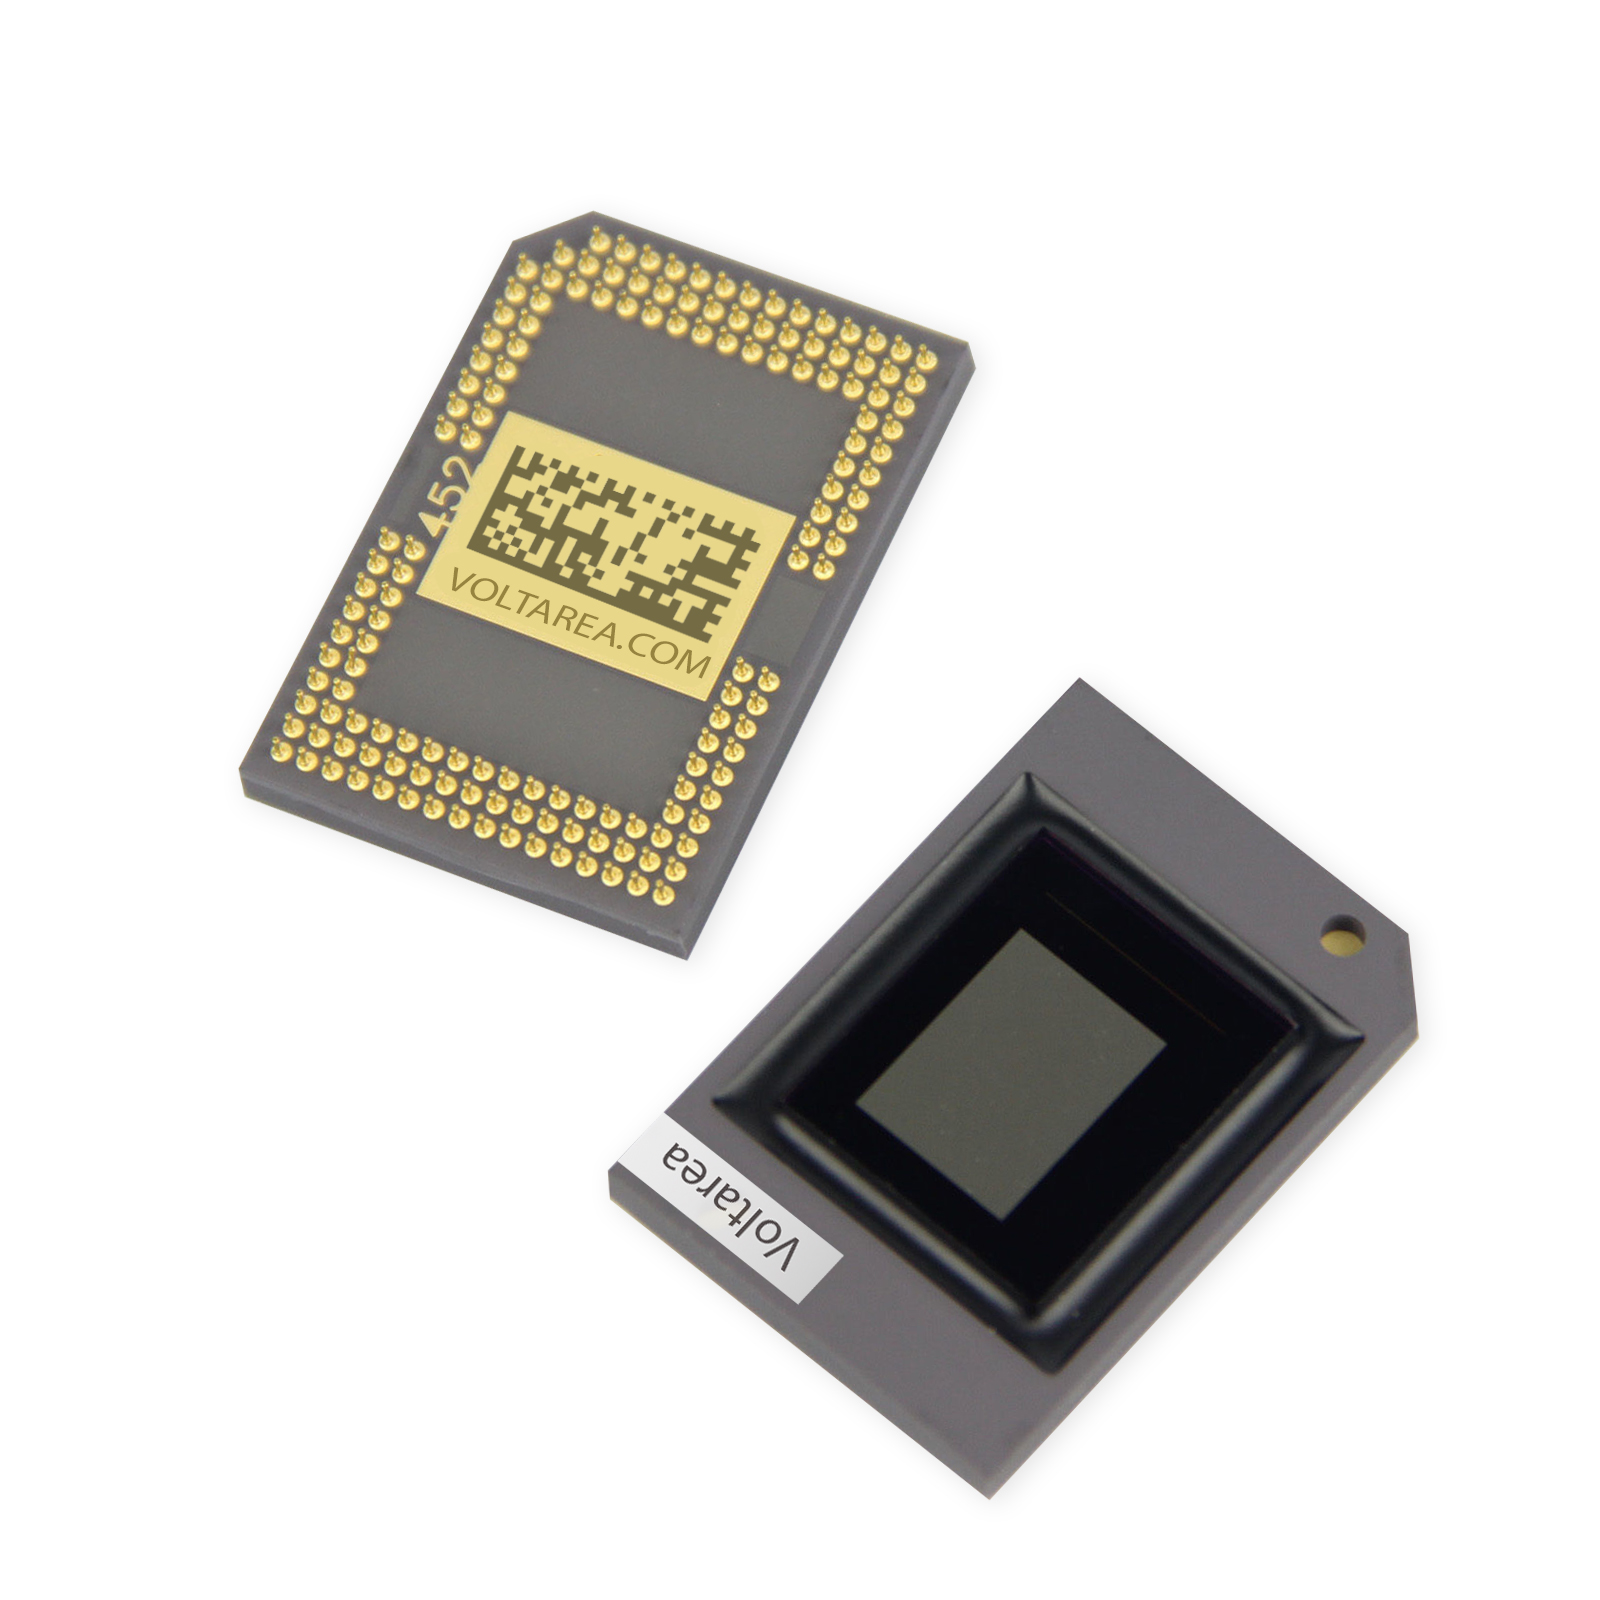 Genuine DMD DLP OEM Chip for ViewSonic PJD5555w PLED-W600 PLED-W800 PJD6544w LS8